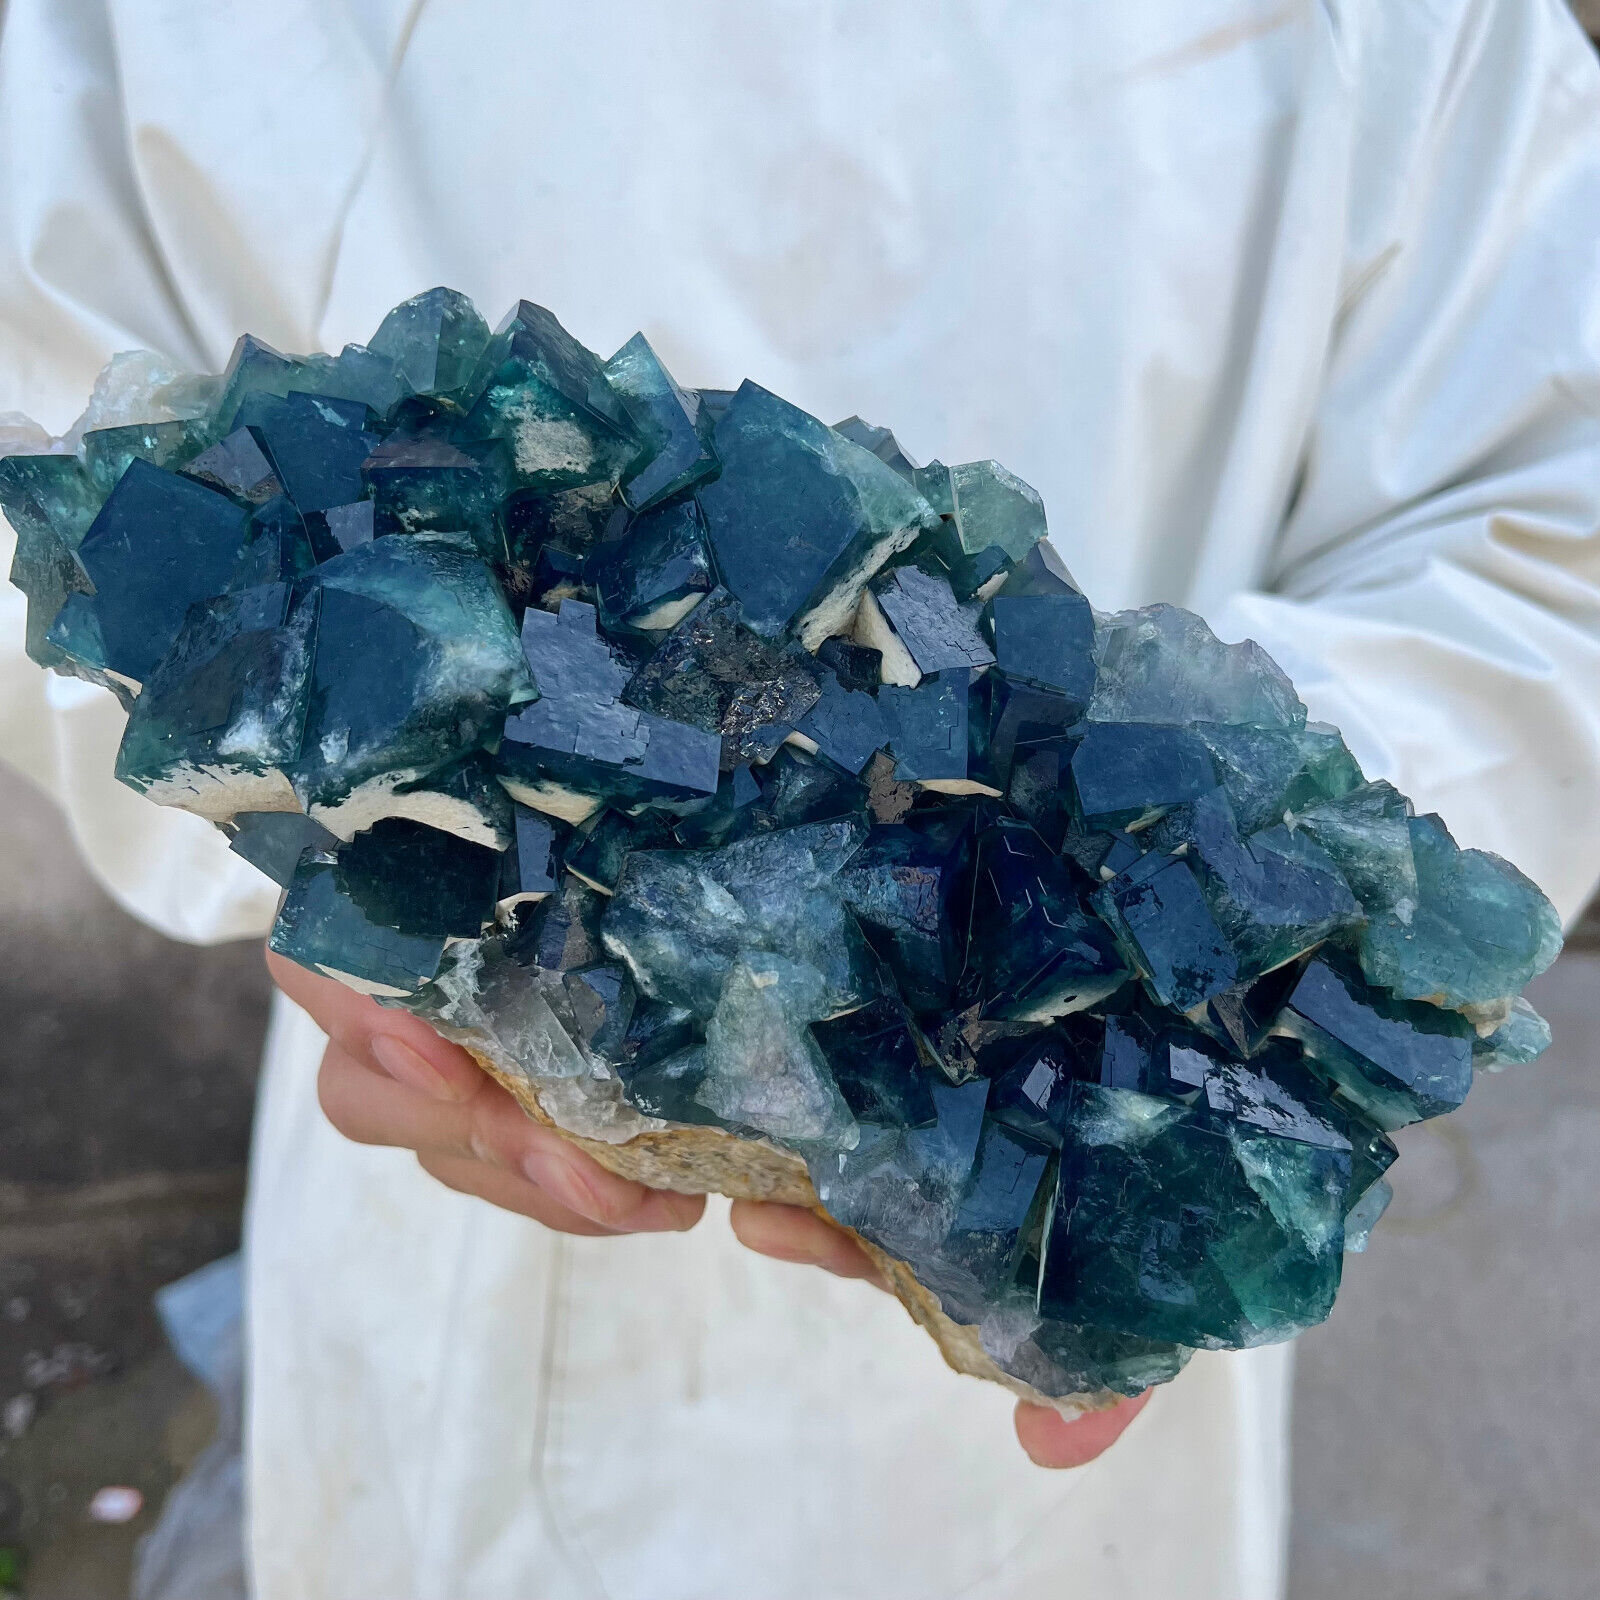 5lb Large NATURAL Green Cube FLUORITE Quartz Crystal Cluster Mineral Specimen